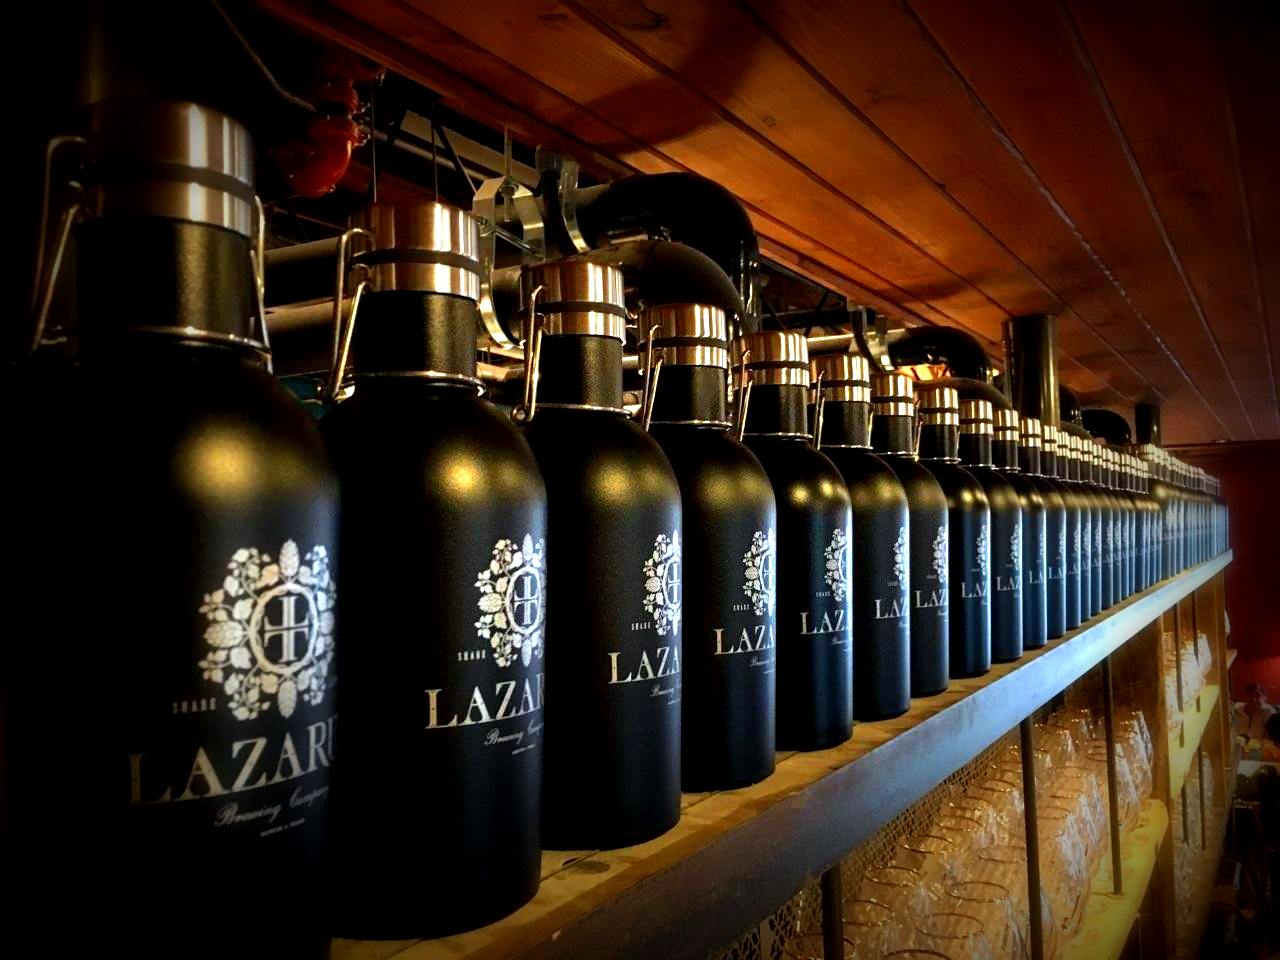 Laz 1 Patron Saint Glass — Lazarus Brewing Co.